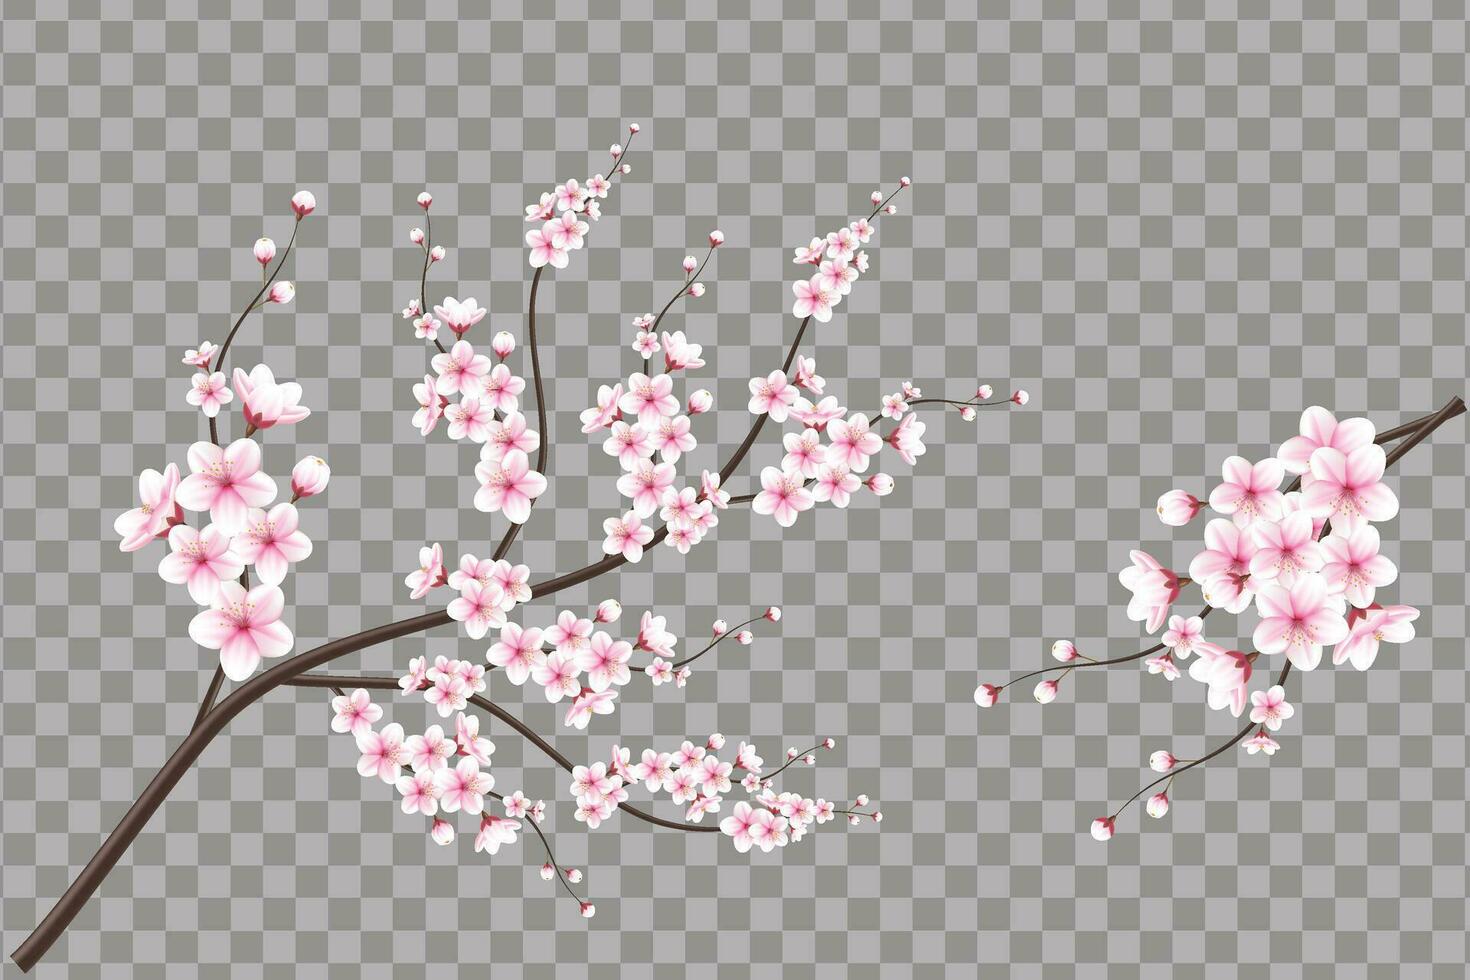 realistisch kers bloesem en kers bloemen en bloemblaadjes illustratie, kers bloesem vector. roze sakura bloem achtergrond. kers bloesem bloem bloeiend vector